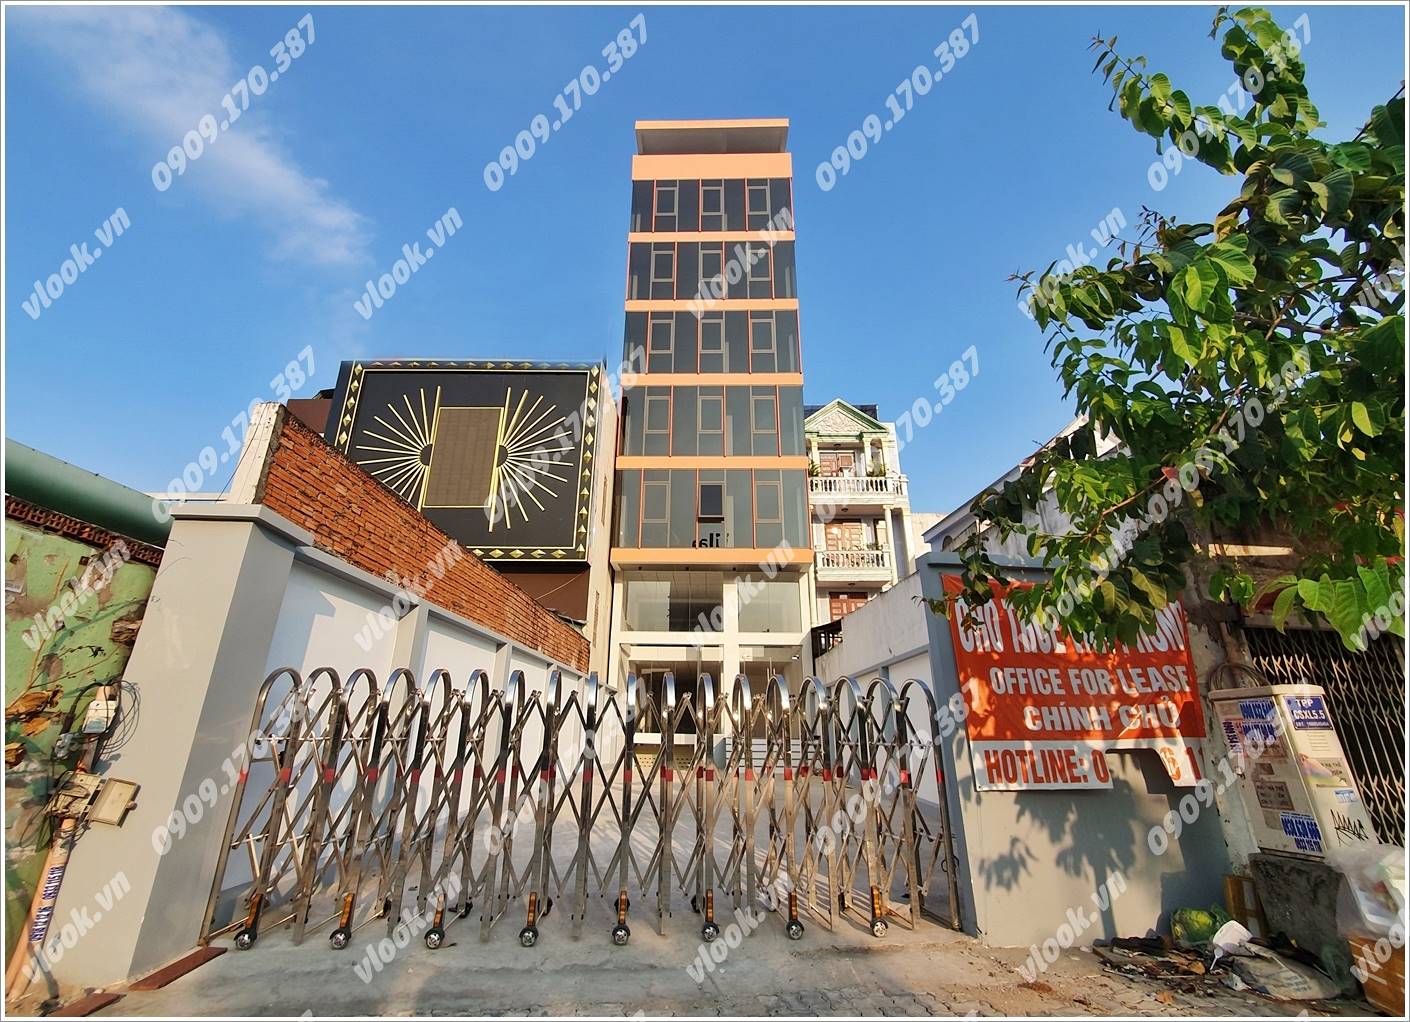 Cao ốc cho thuê văn phòng MMN Building, Trần Não, Quận 2, TPHCM - vlook.vn